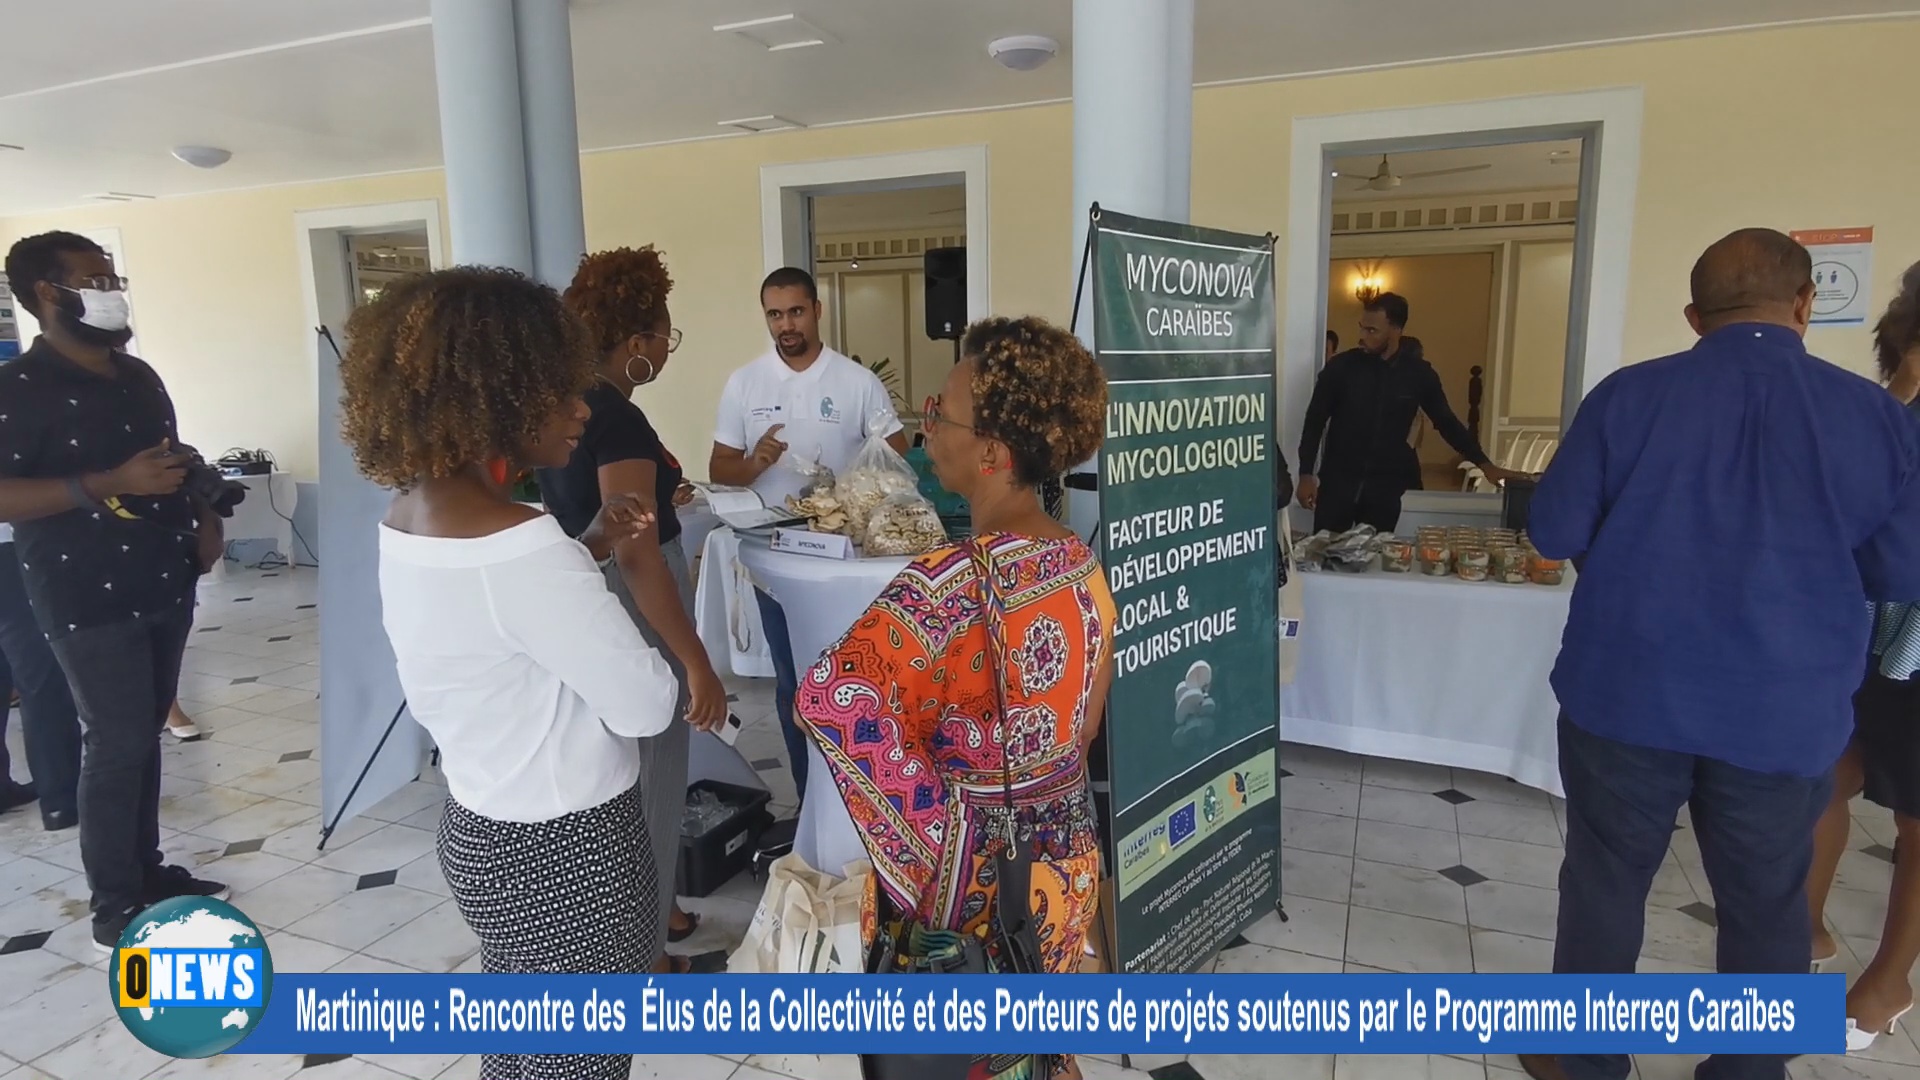 [Vidéo] Martinique. Rencontre des élus de la Collectivité et des porteurs de projets